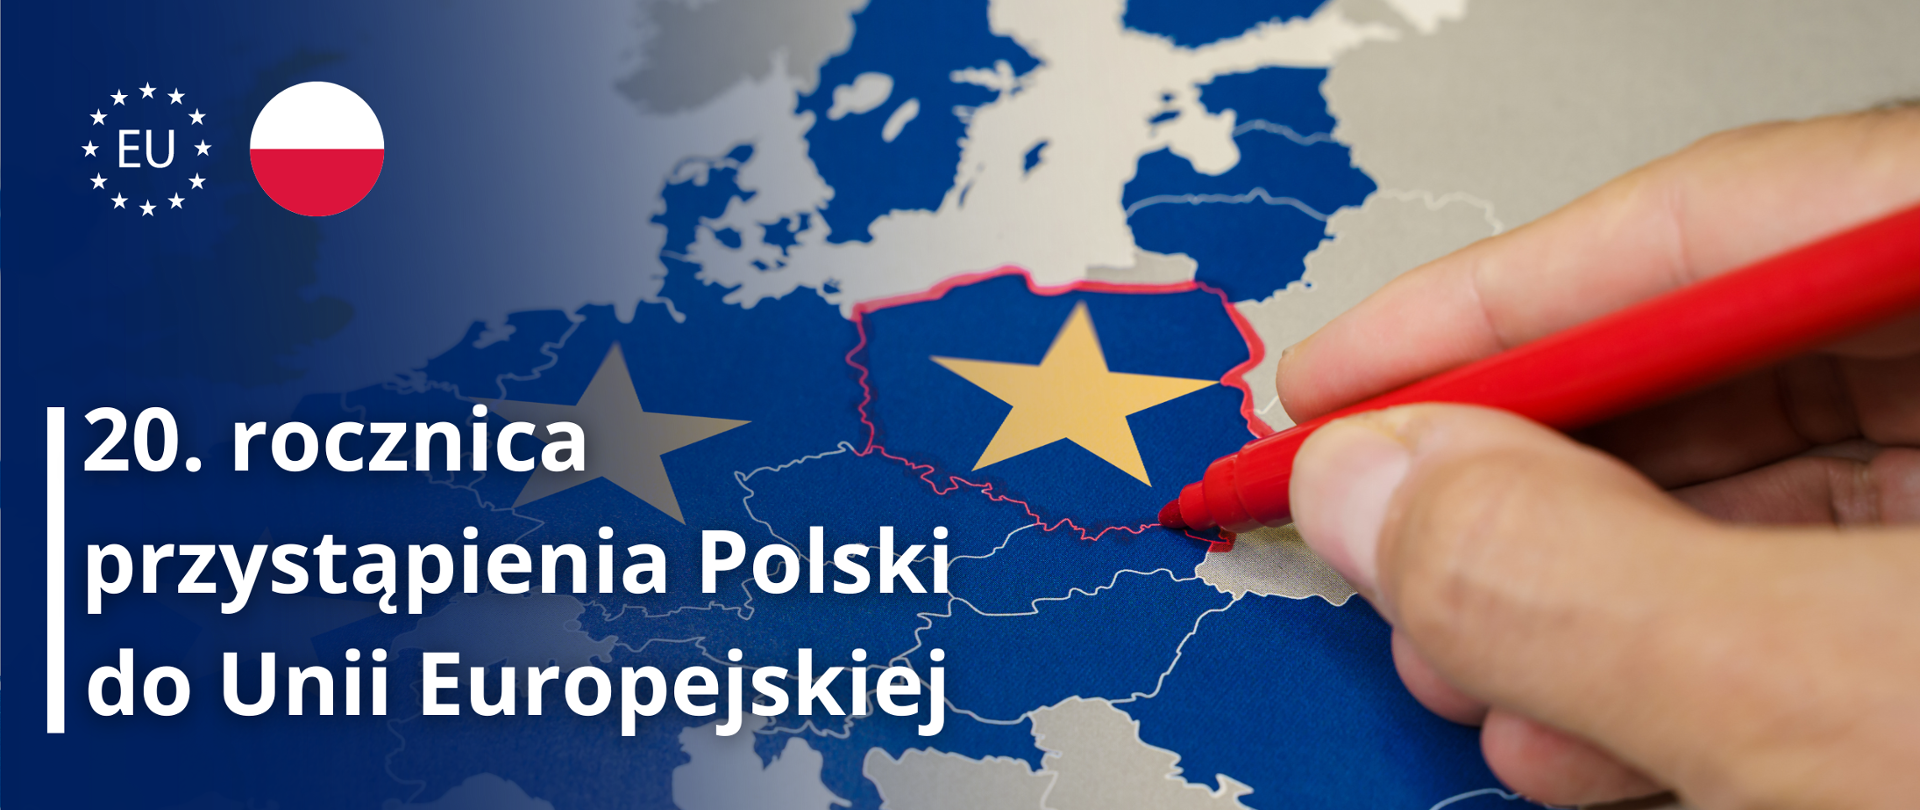 Mapa Europy, na niej Polska zaznaczona czerwonym kolorem, w lewym górnym rogu logotyp EU oraz koło w kolorze polskiej flagi. Poniżej tekst: 20. rocznica przystąpienia Polski do Unii Europejskiej